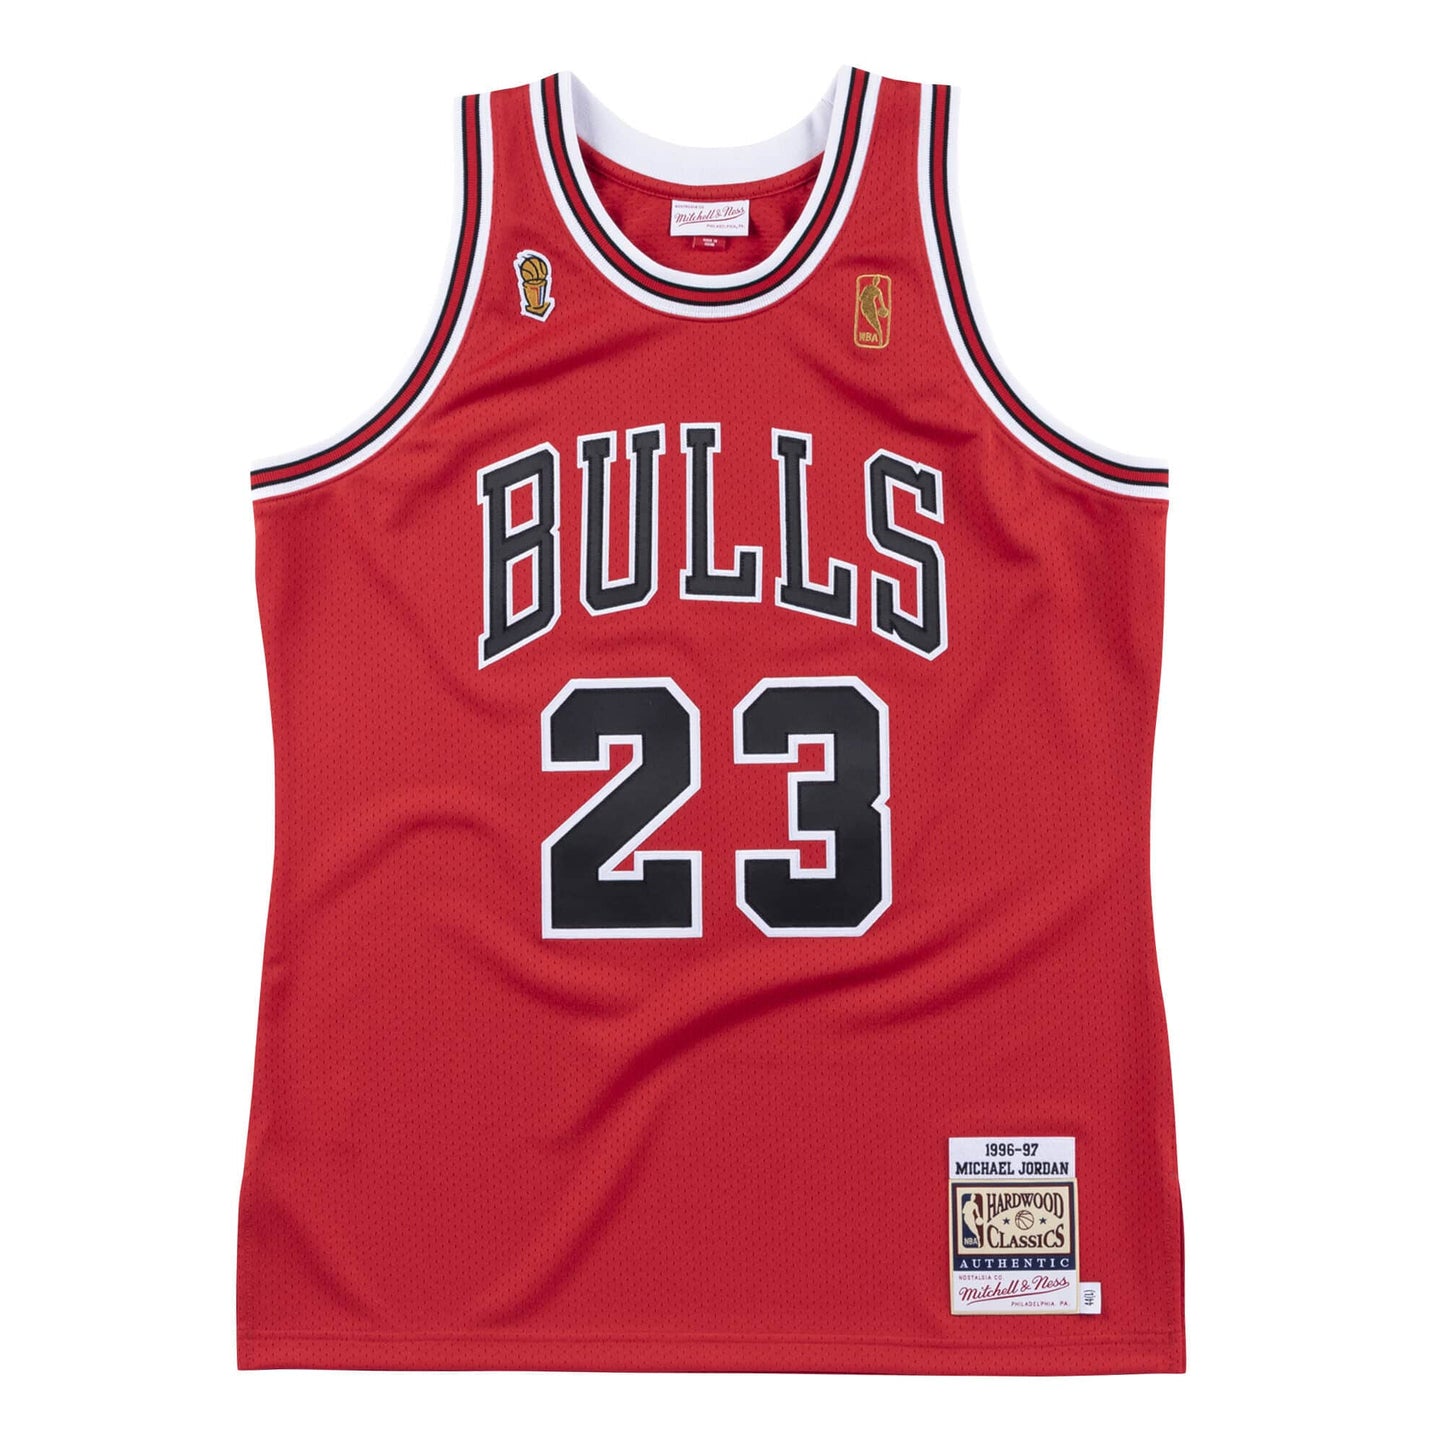 Authentic Jersey Chicago Bulls 1996-97 Michael Jordans